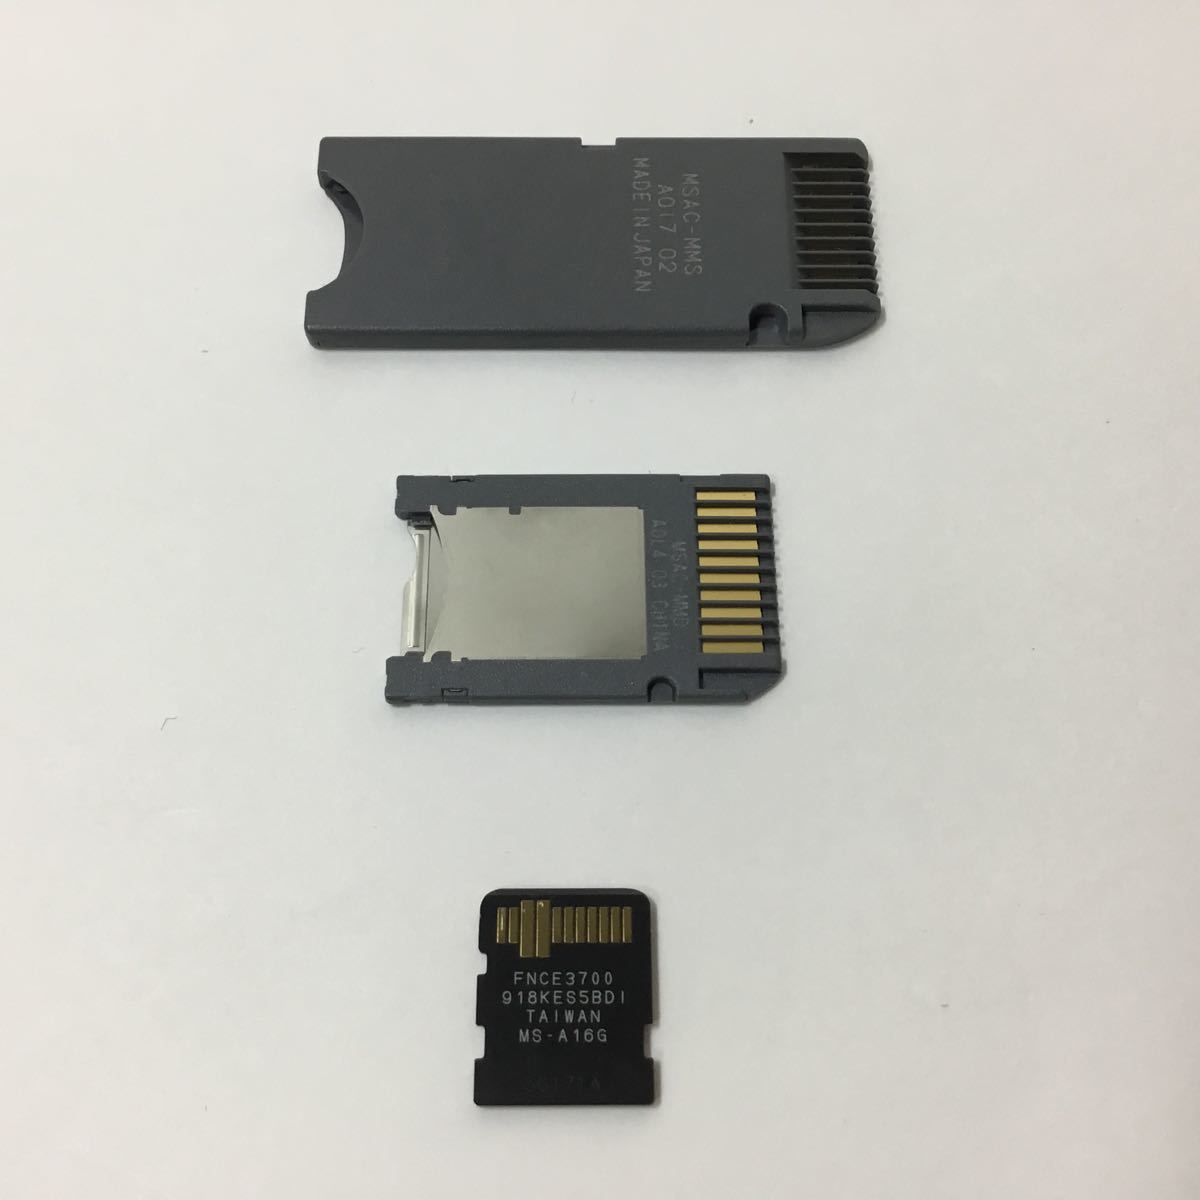 SONY メモリースティックマイクロ(M2) Mark2対応 16GB MS-M16  PSPマイクロ"(M2)アダプター  